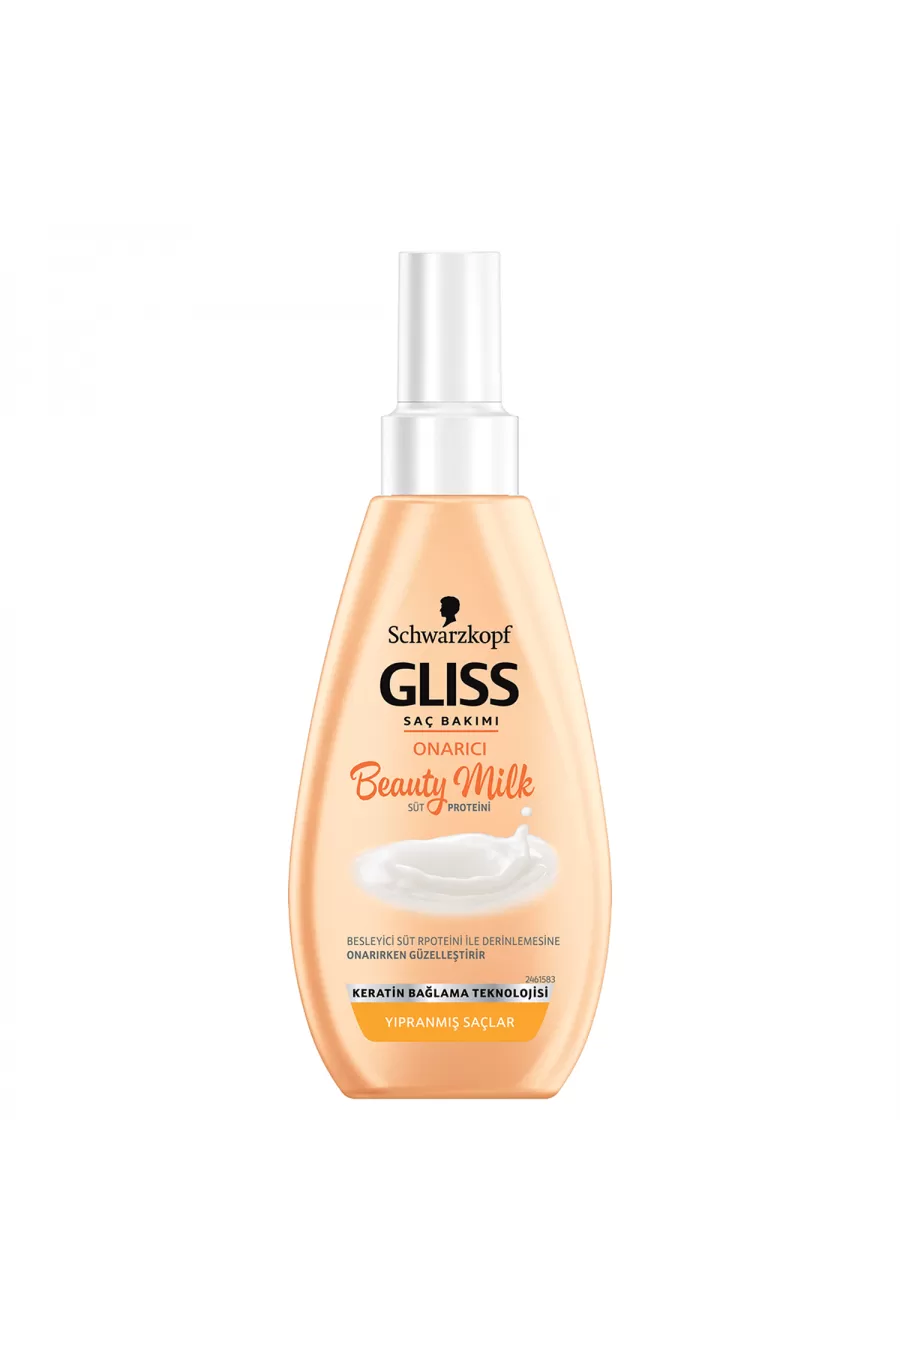 حاوی عصاره گل و کراتین ترمیم و تغذیه کننده عمیق مو گیلیس GLISS شیر مو کراتین